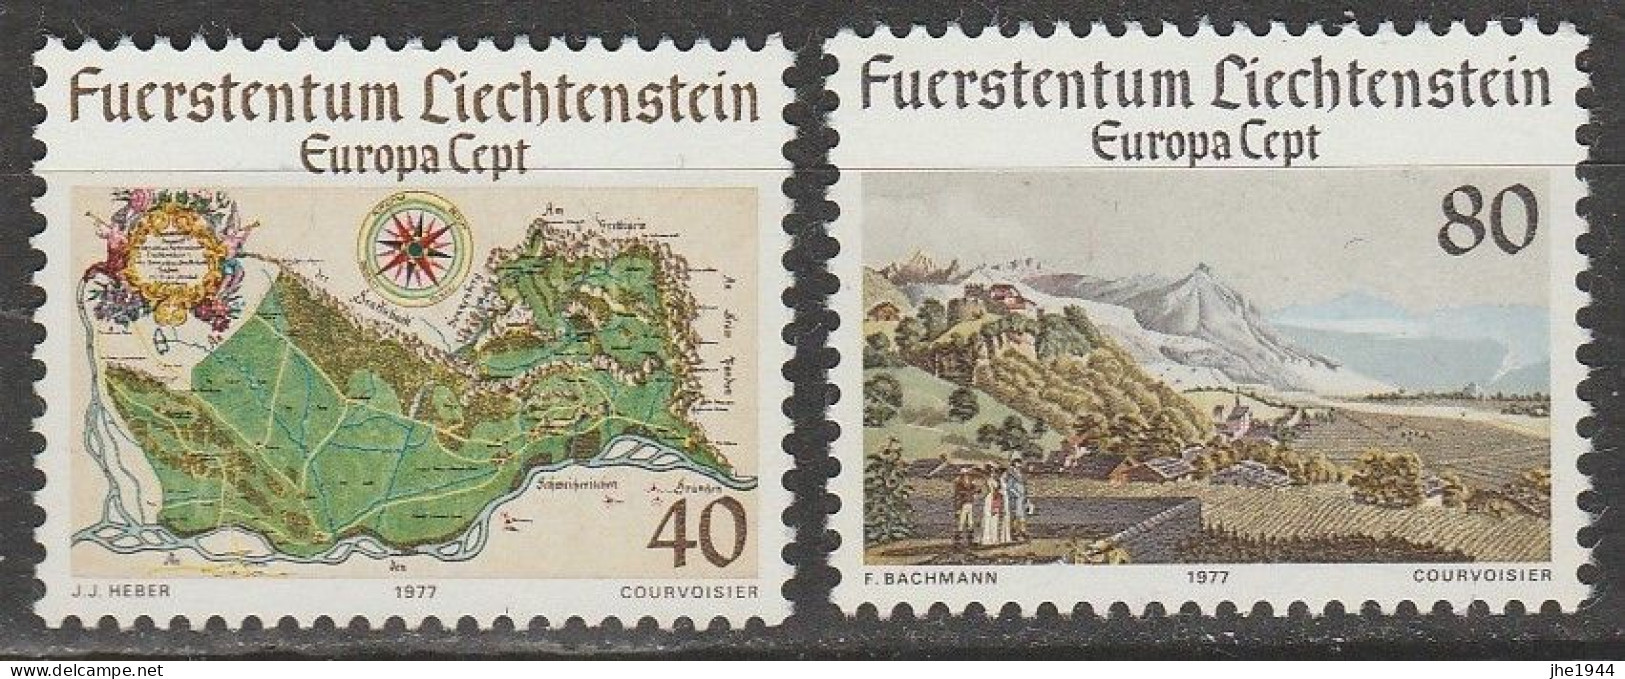 Europa 1977 Paysages Voir liste des timbres à vendre **